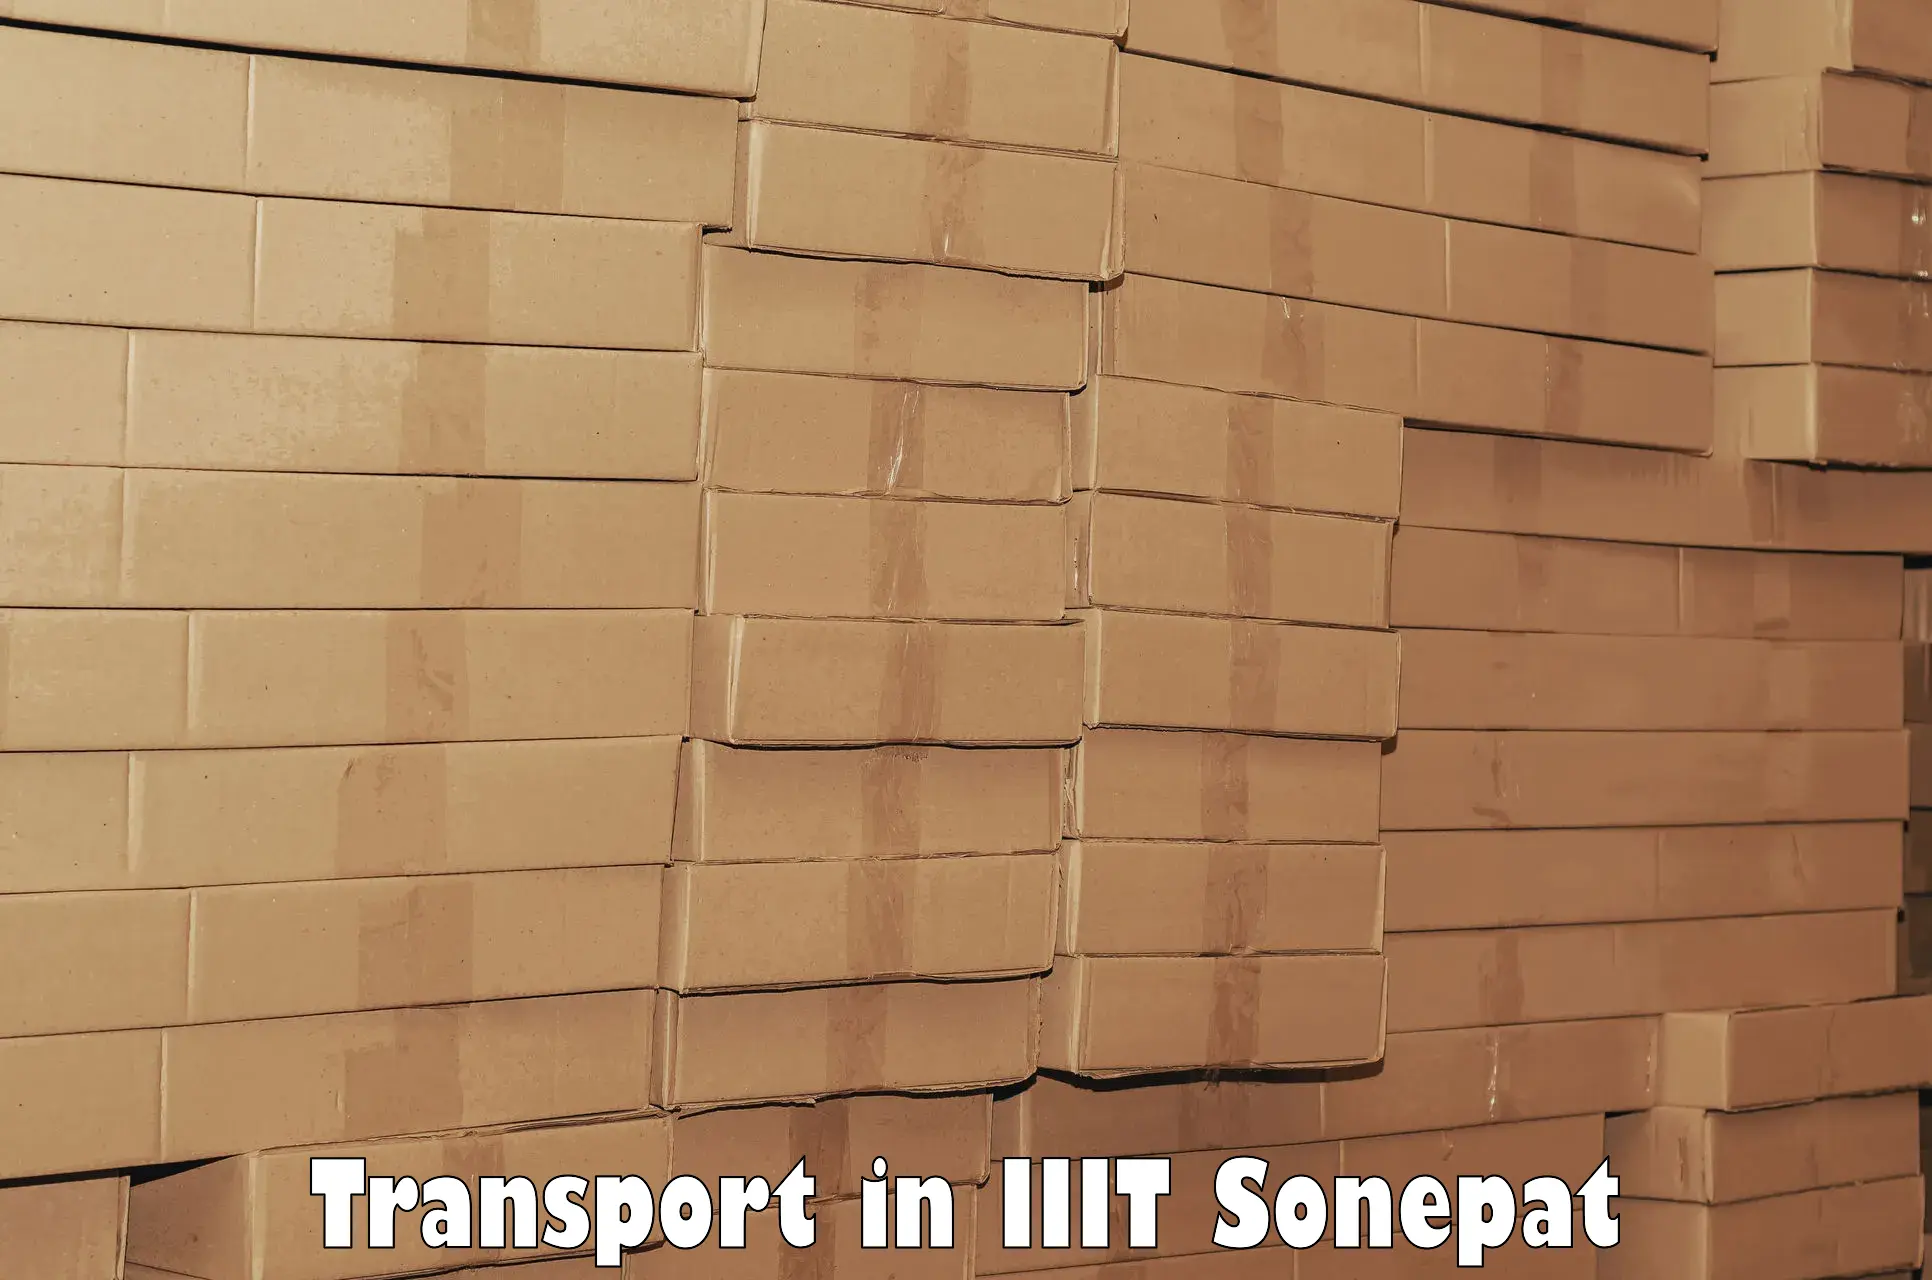 Intercity transport in IIIT Sonepat